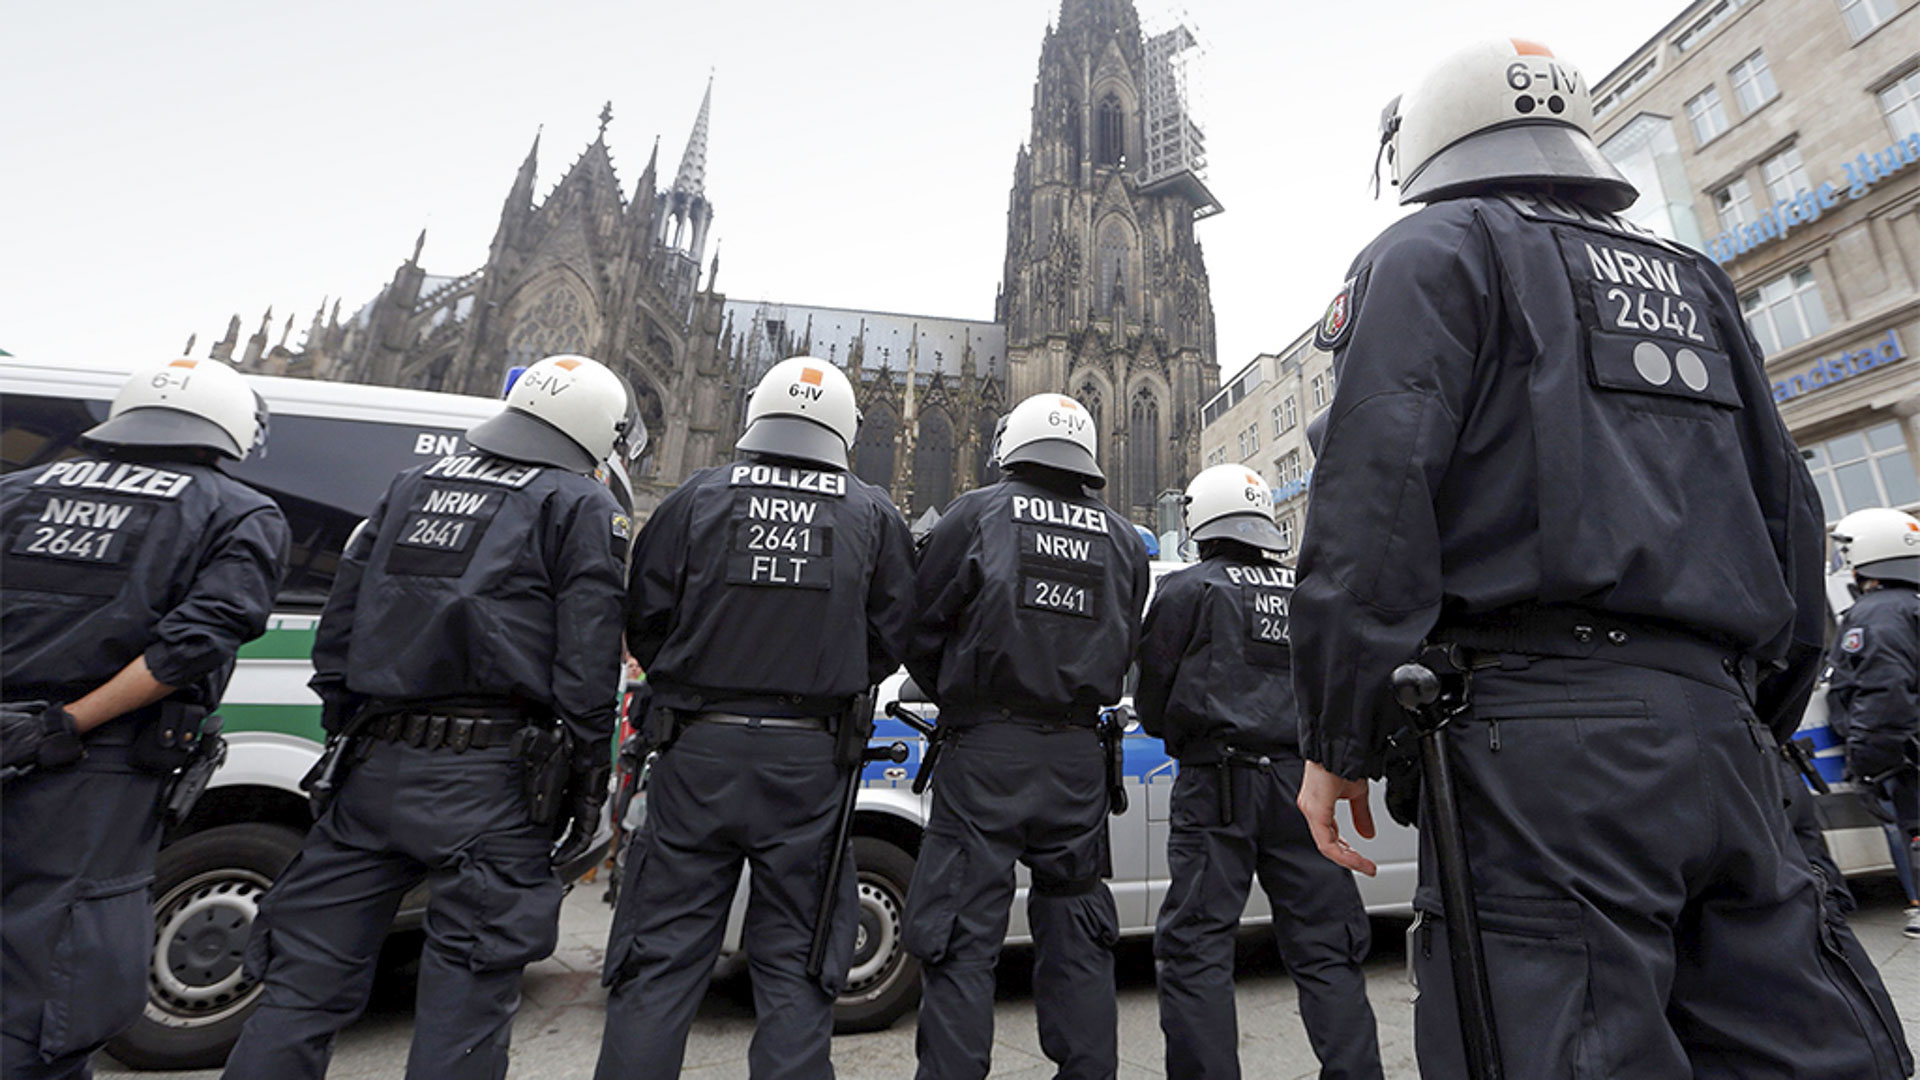 Polizeibeamte bereiten sich in Köln auf die Pro-Erdogan-Demonstration vor. | Bildquelle: REUTERS